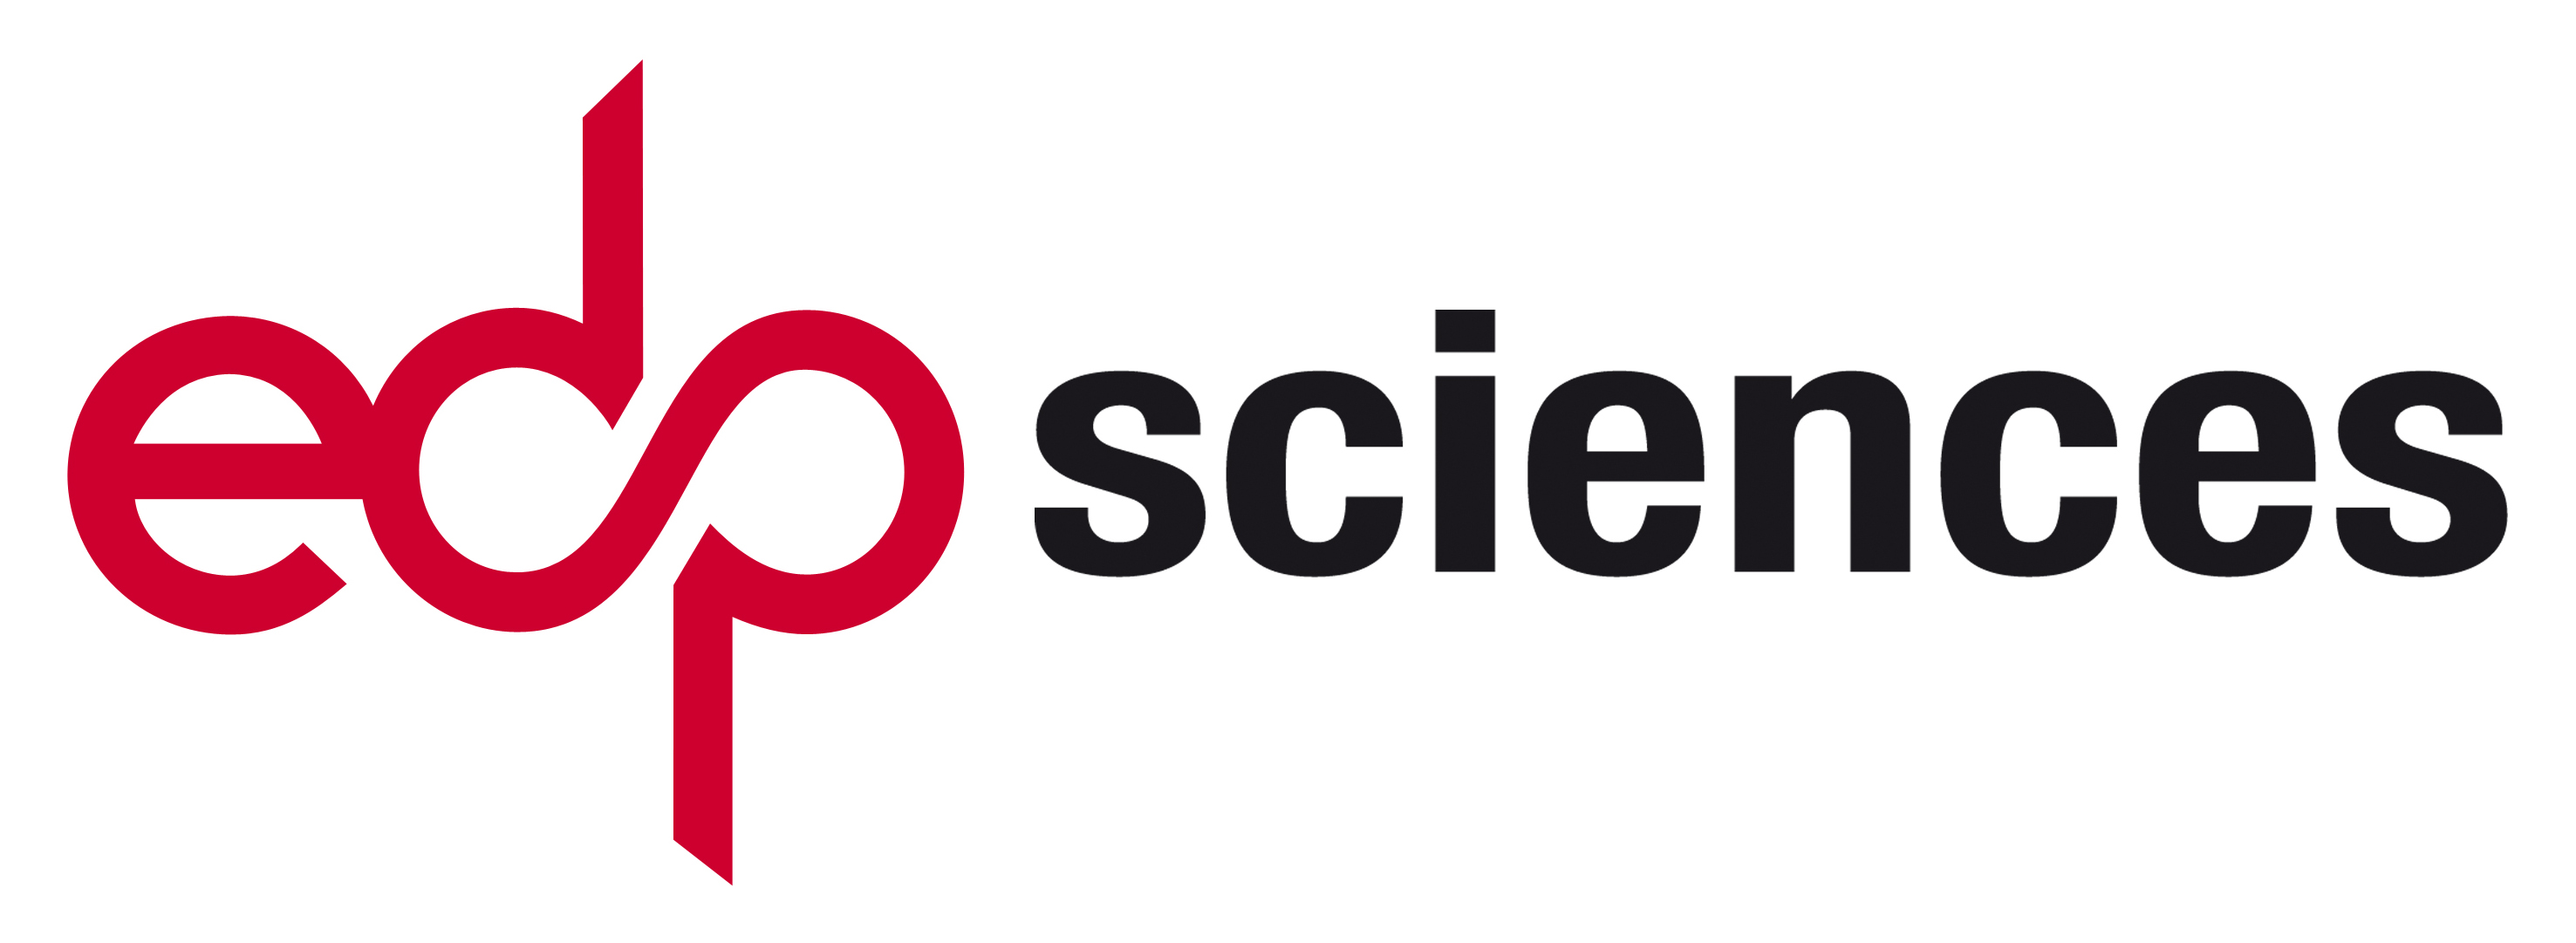 EDP Sciences logo.jpg